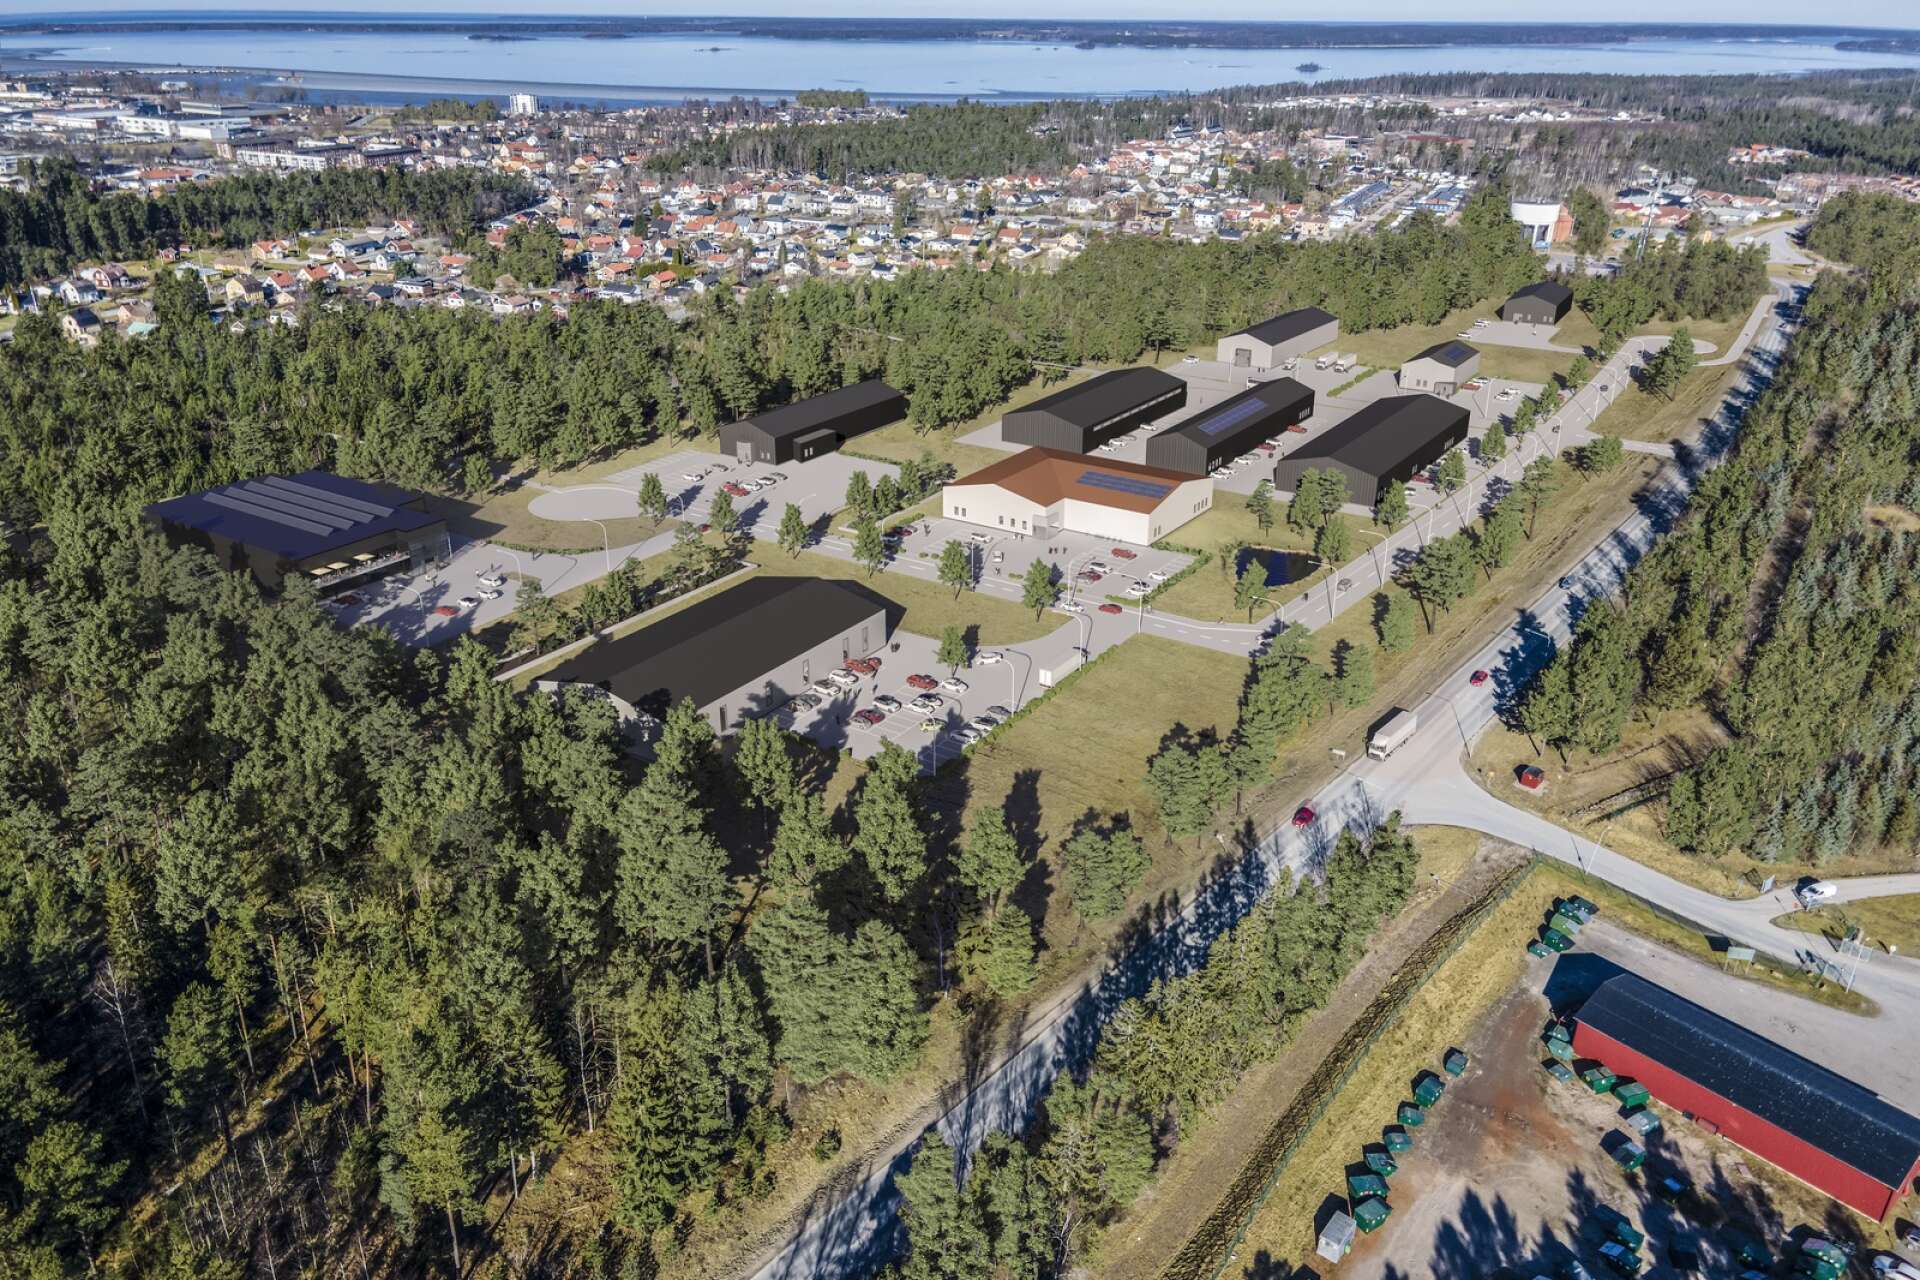 Så här kan det nya handelsområdet i Ladukärr se ut. Det är en visionsbild som kommunen låtit ta fram under arbetet med den nya detaljplanen. Området ligger mittemot infarten till Bångahagens återvinningscentral.